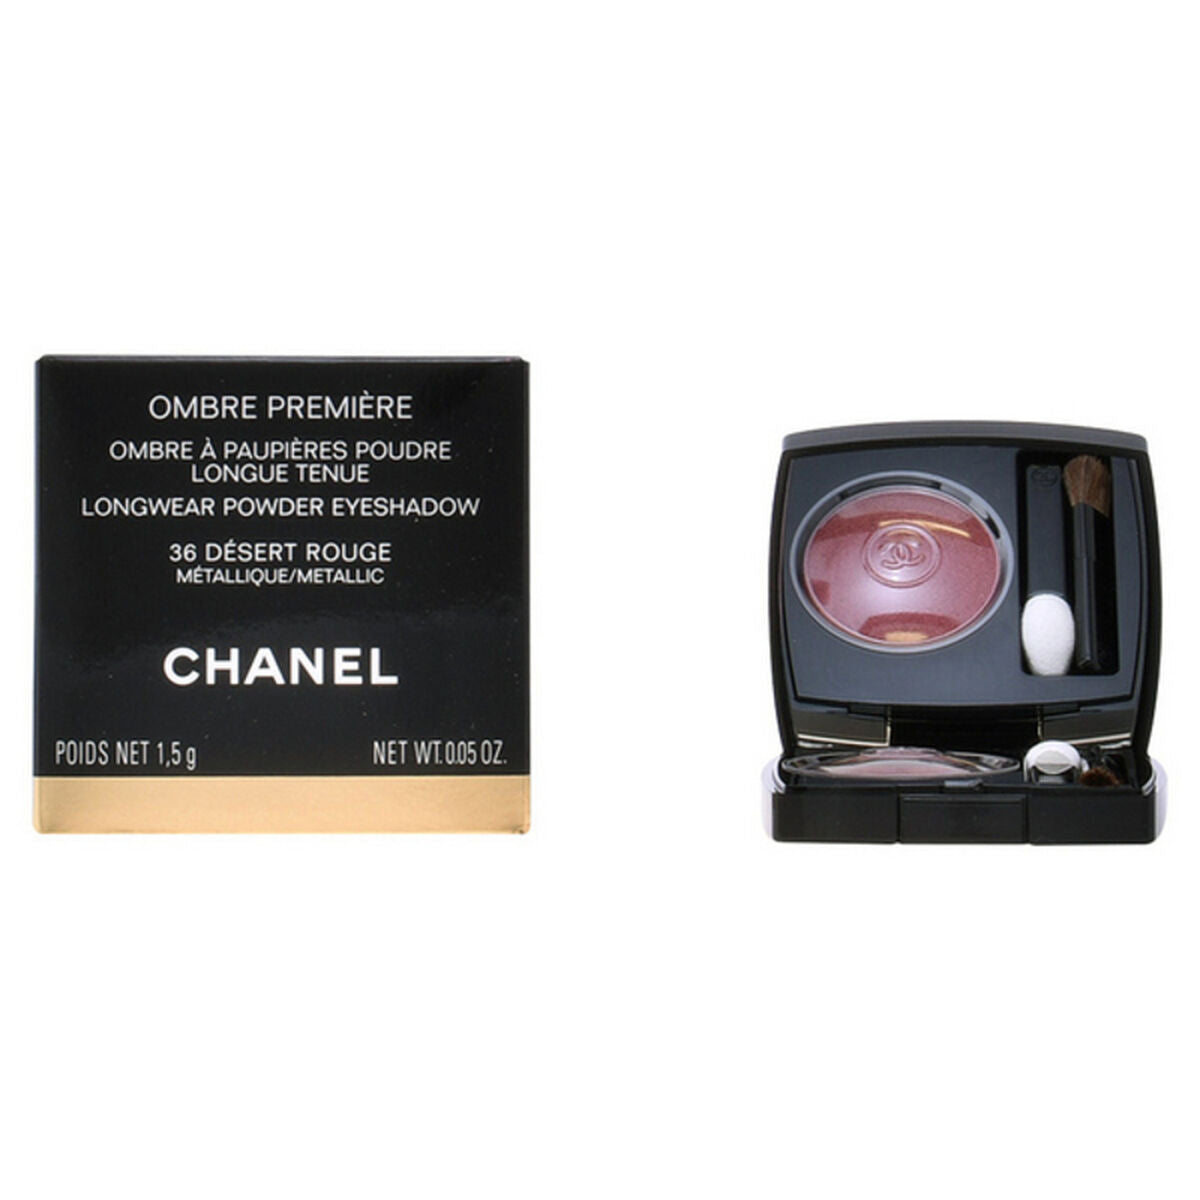 Kaufe Lidschatten Première Chanel (2,2 g) (1,5 g) bei AWK Flagship um € 53.00